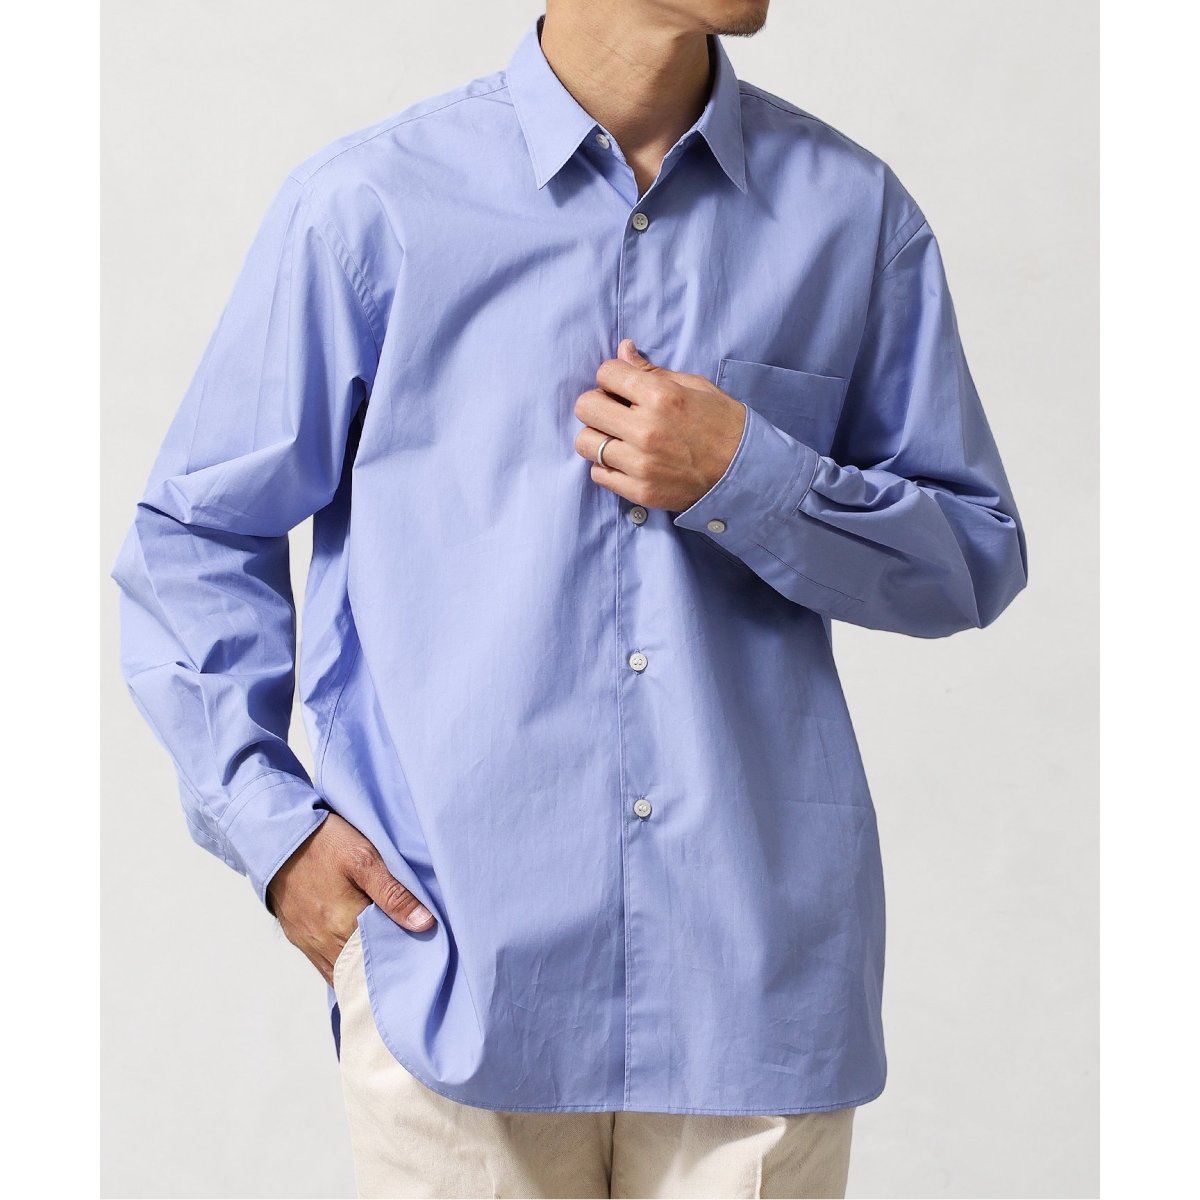 【気質アップ】 Essential エッセンシャル shirt エディフィス 417 シャツ 正規品スーパーSALE×店内全品キャンペーン